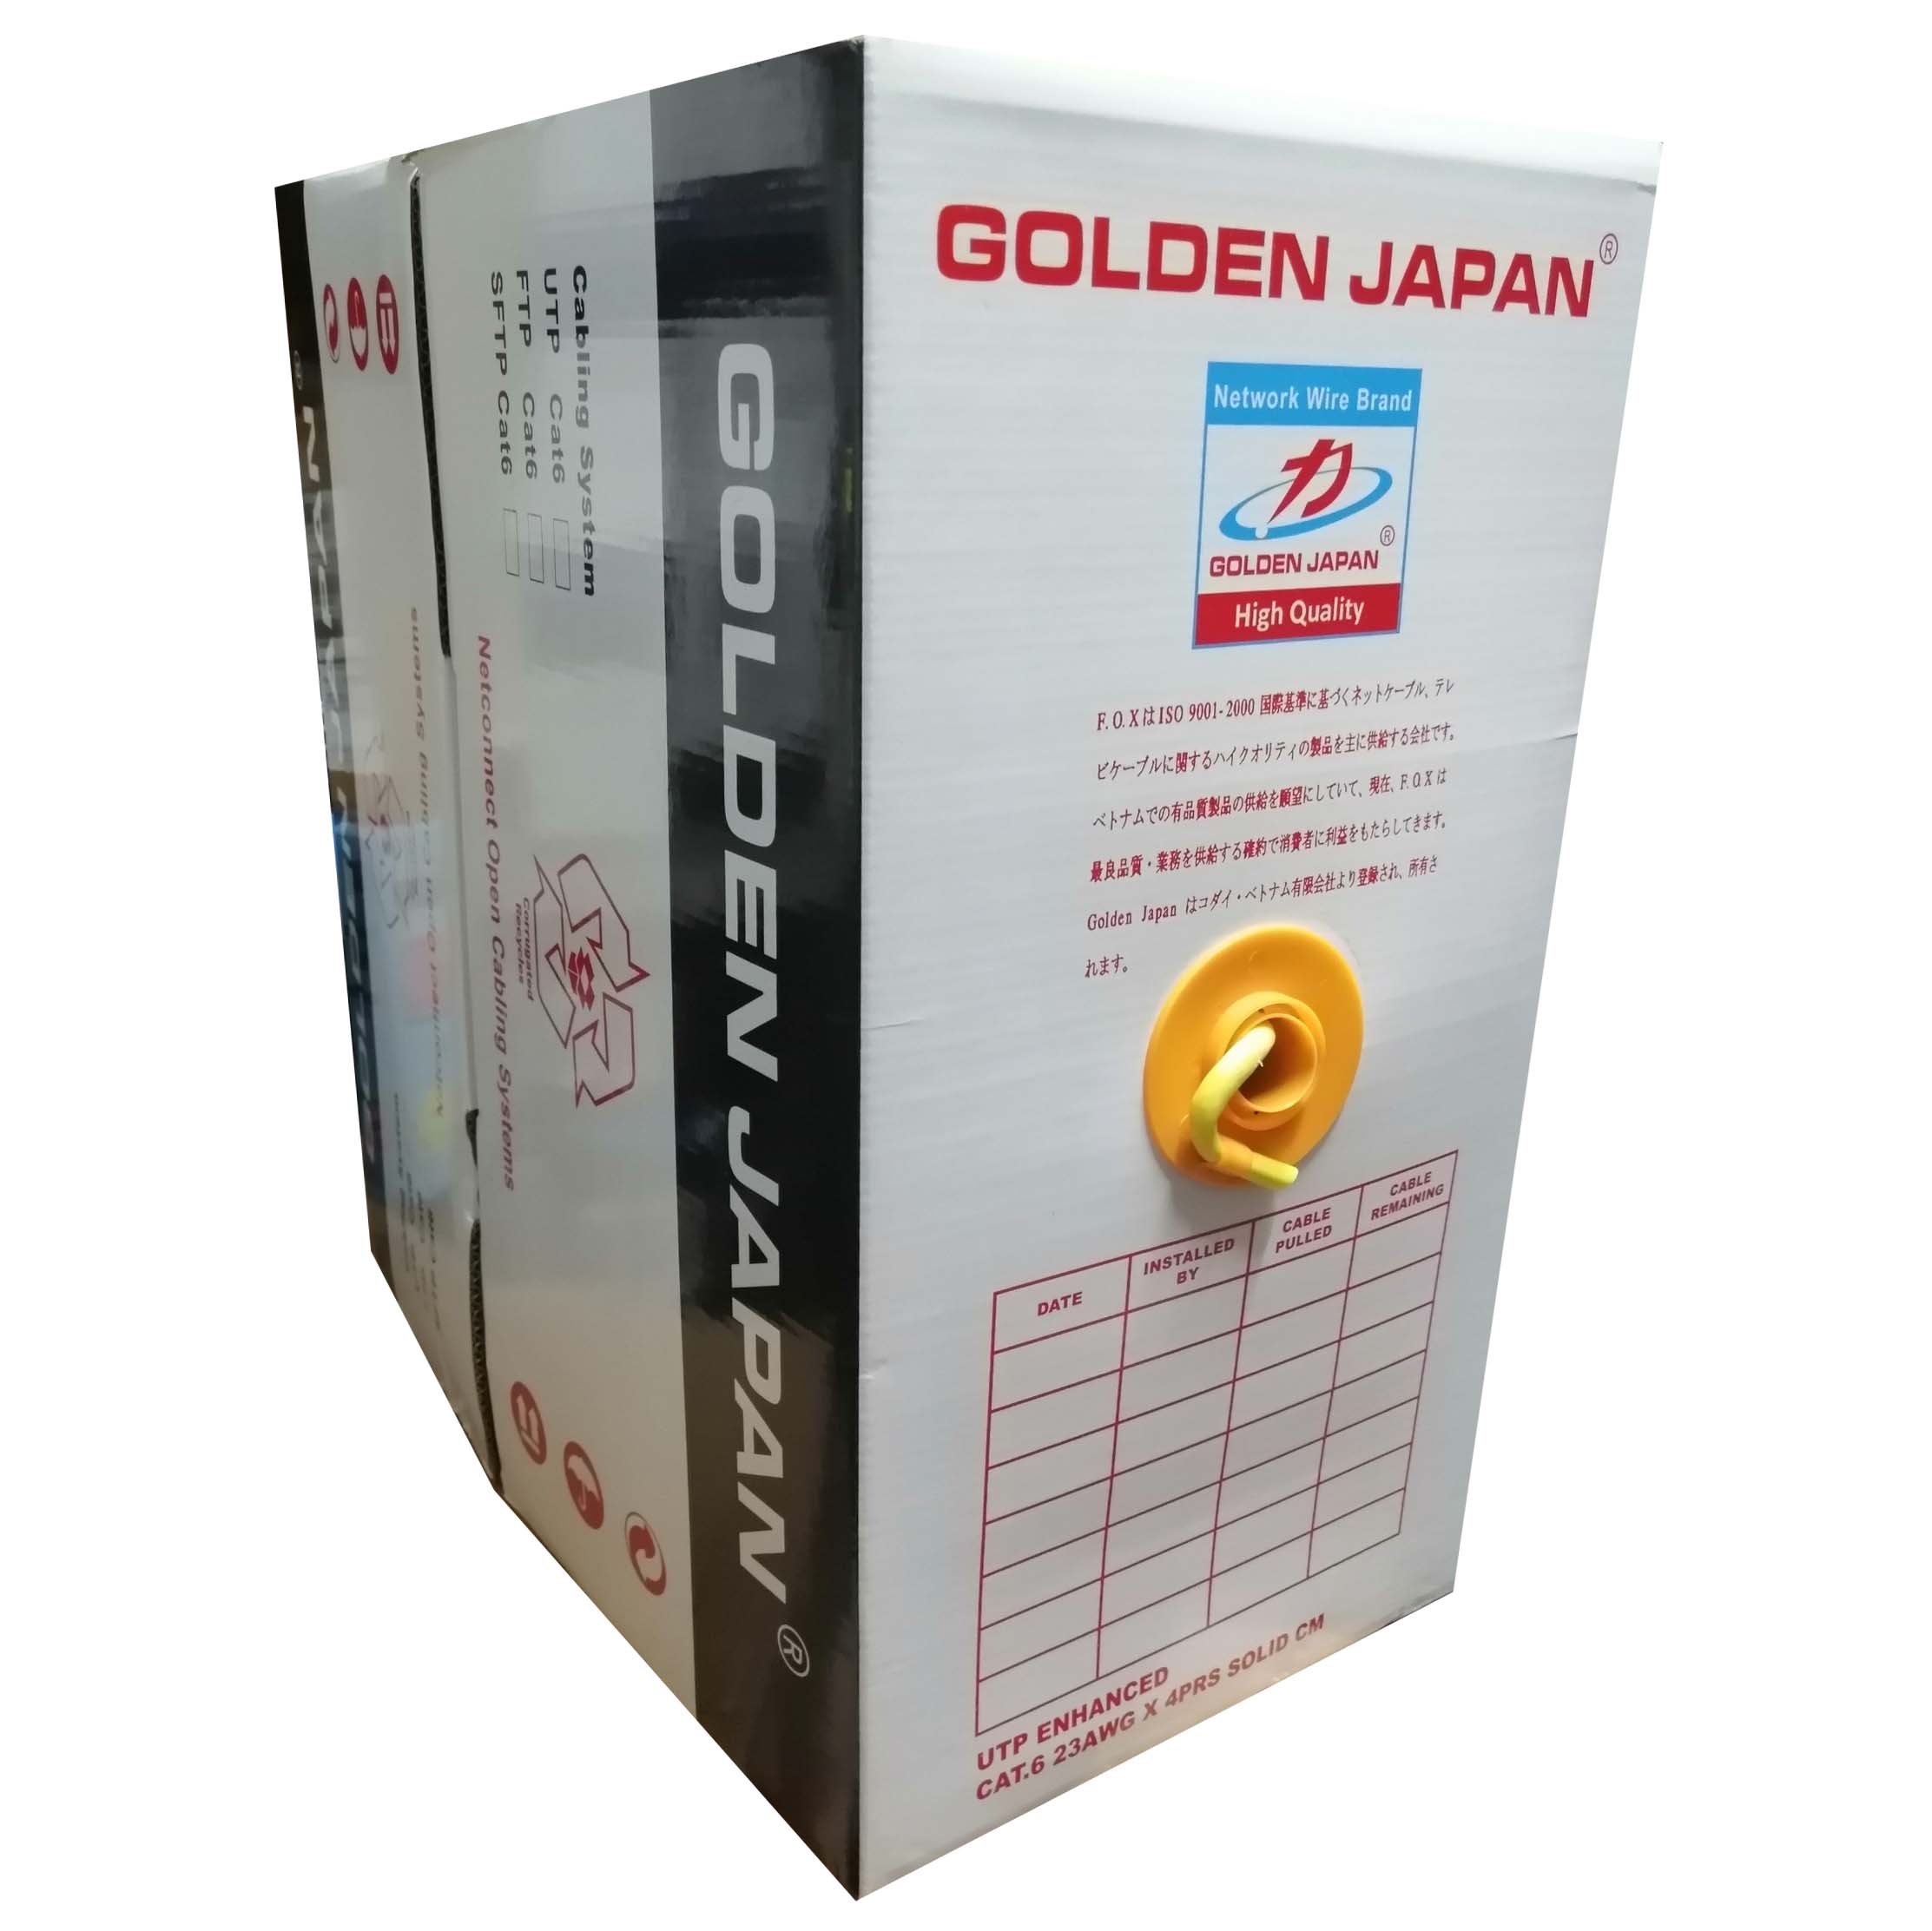 Cable LAN GOLDEN JAPAN SFTP CAT6 305m Vàng (Chống nhiễu 2 lớp, Lõi chữ thập, Sợi cường lực đơn, Nhôm mạ đồng)(THAY THẾ CHO GOLDEN TAIWAN SFTP CAT6 305m Xanh lá)